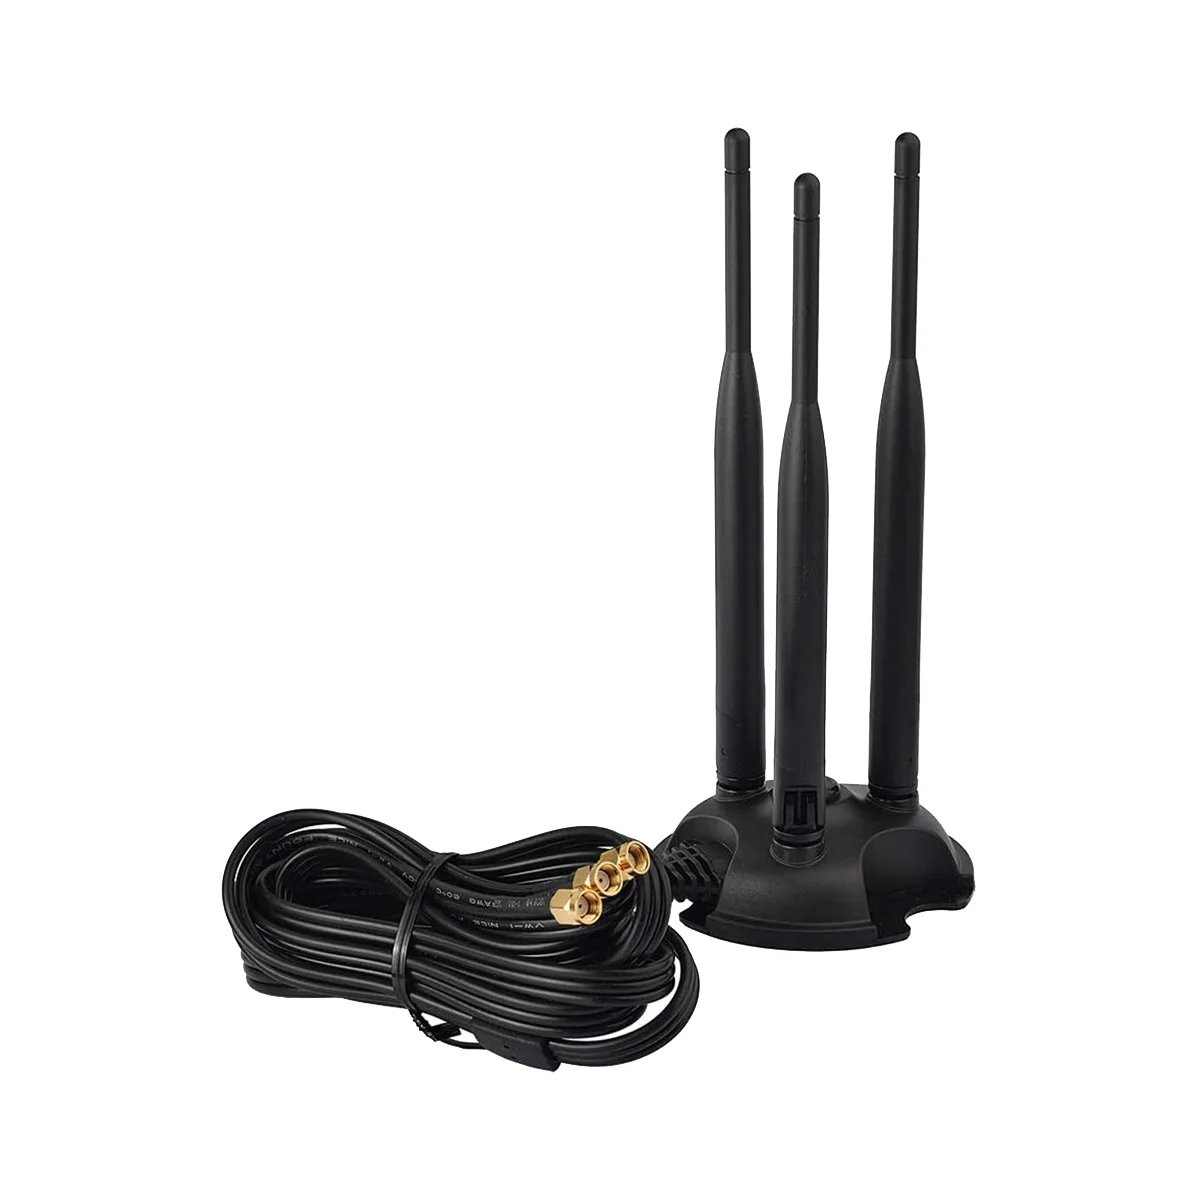 

Двухдиапазонная Wi-Fi антенна 2,4 ГГц 5 ГГц, стандартная антенна для настольного компьютера, беспроводной маршрутизатор Wi-Fi, внешний USB Wi-Fi адаптер